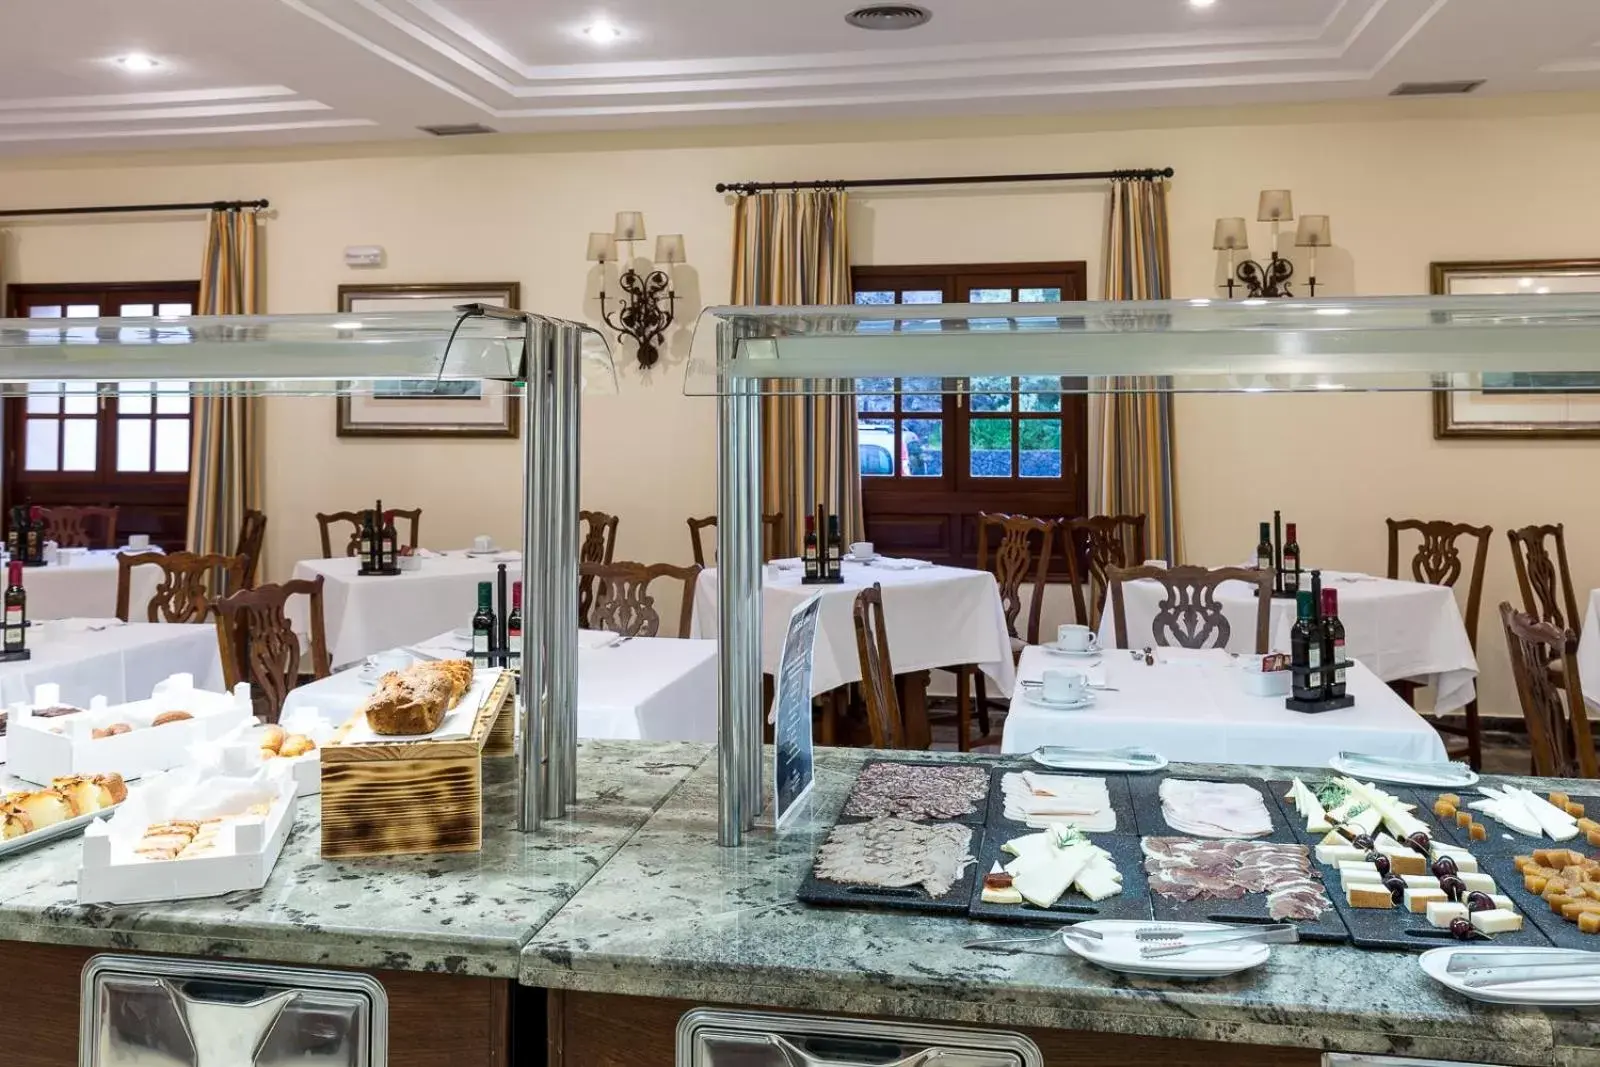 Area and facilities, Restaurant/Places to Eat in Parador de La Palma